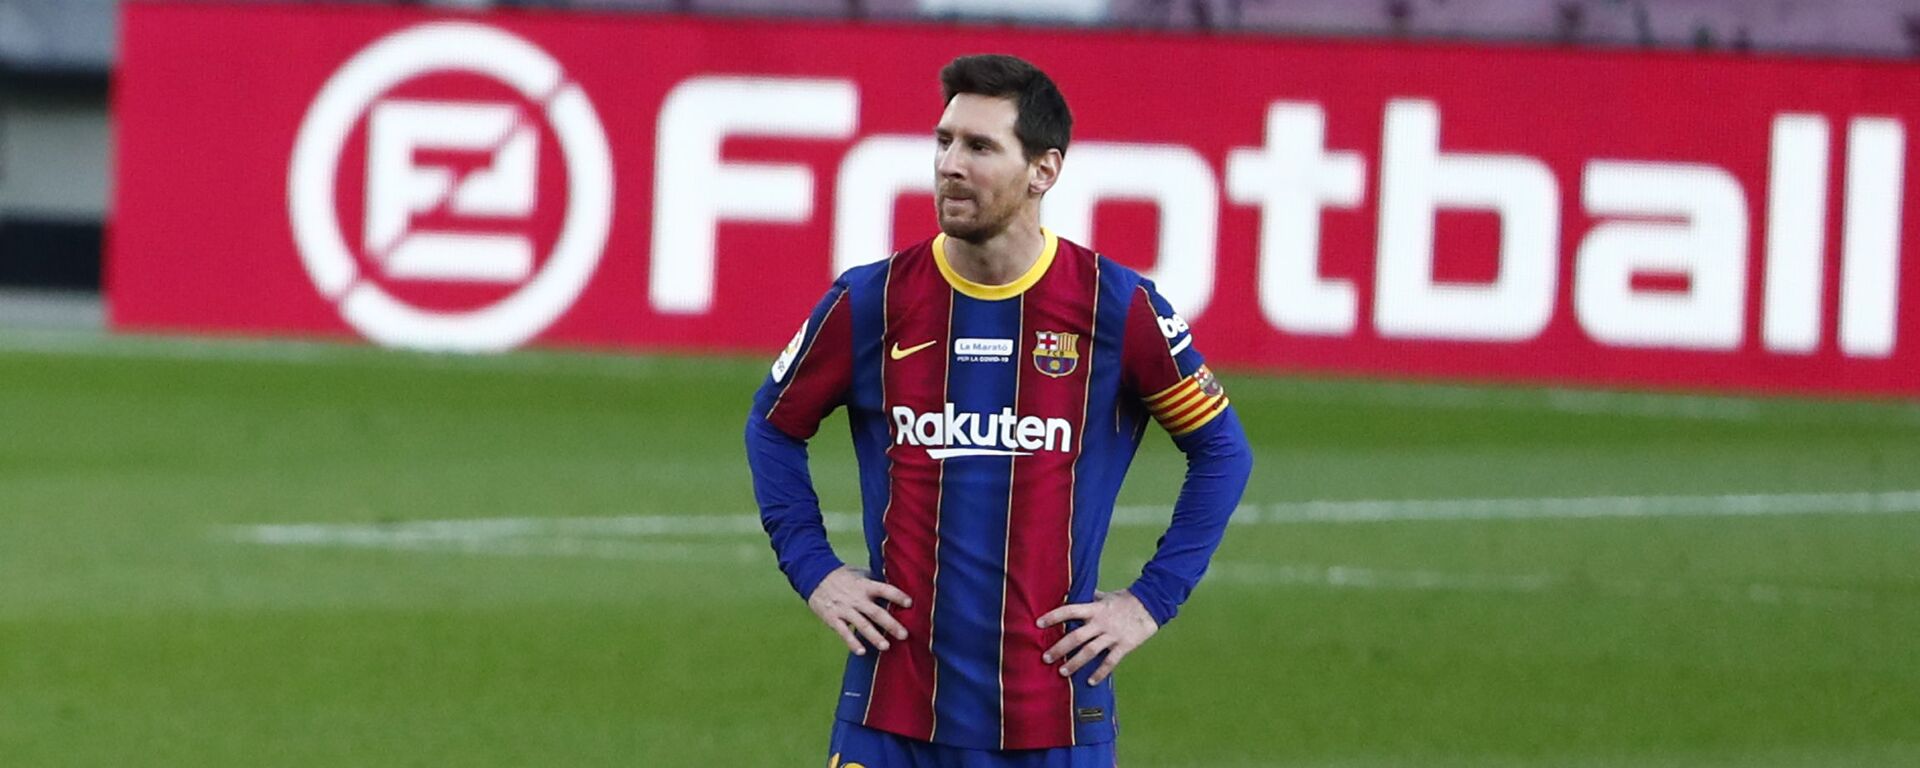 Leo Messi, futbolista argentino - اسپوتنیک افغانستان  , 1920, 21.06.2021